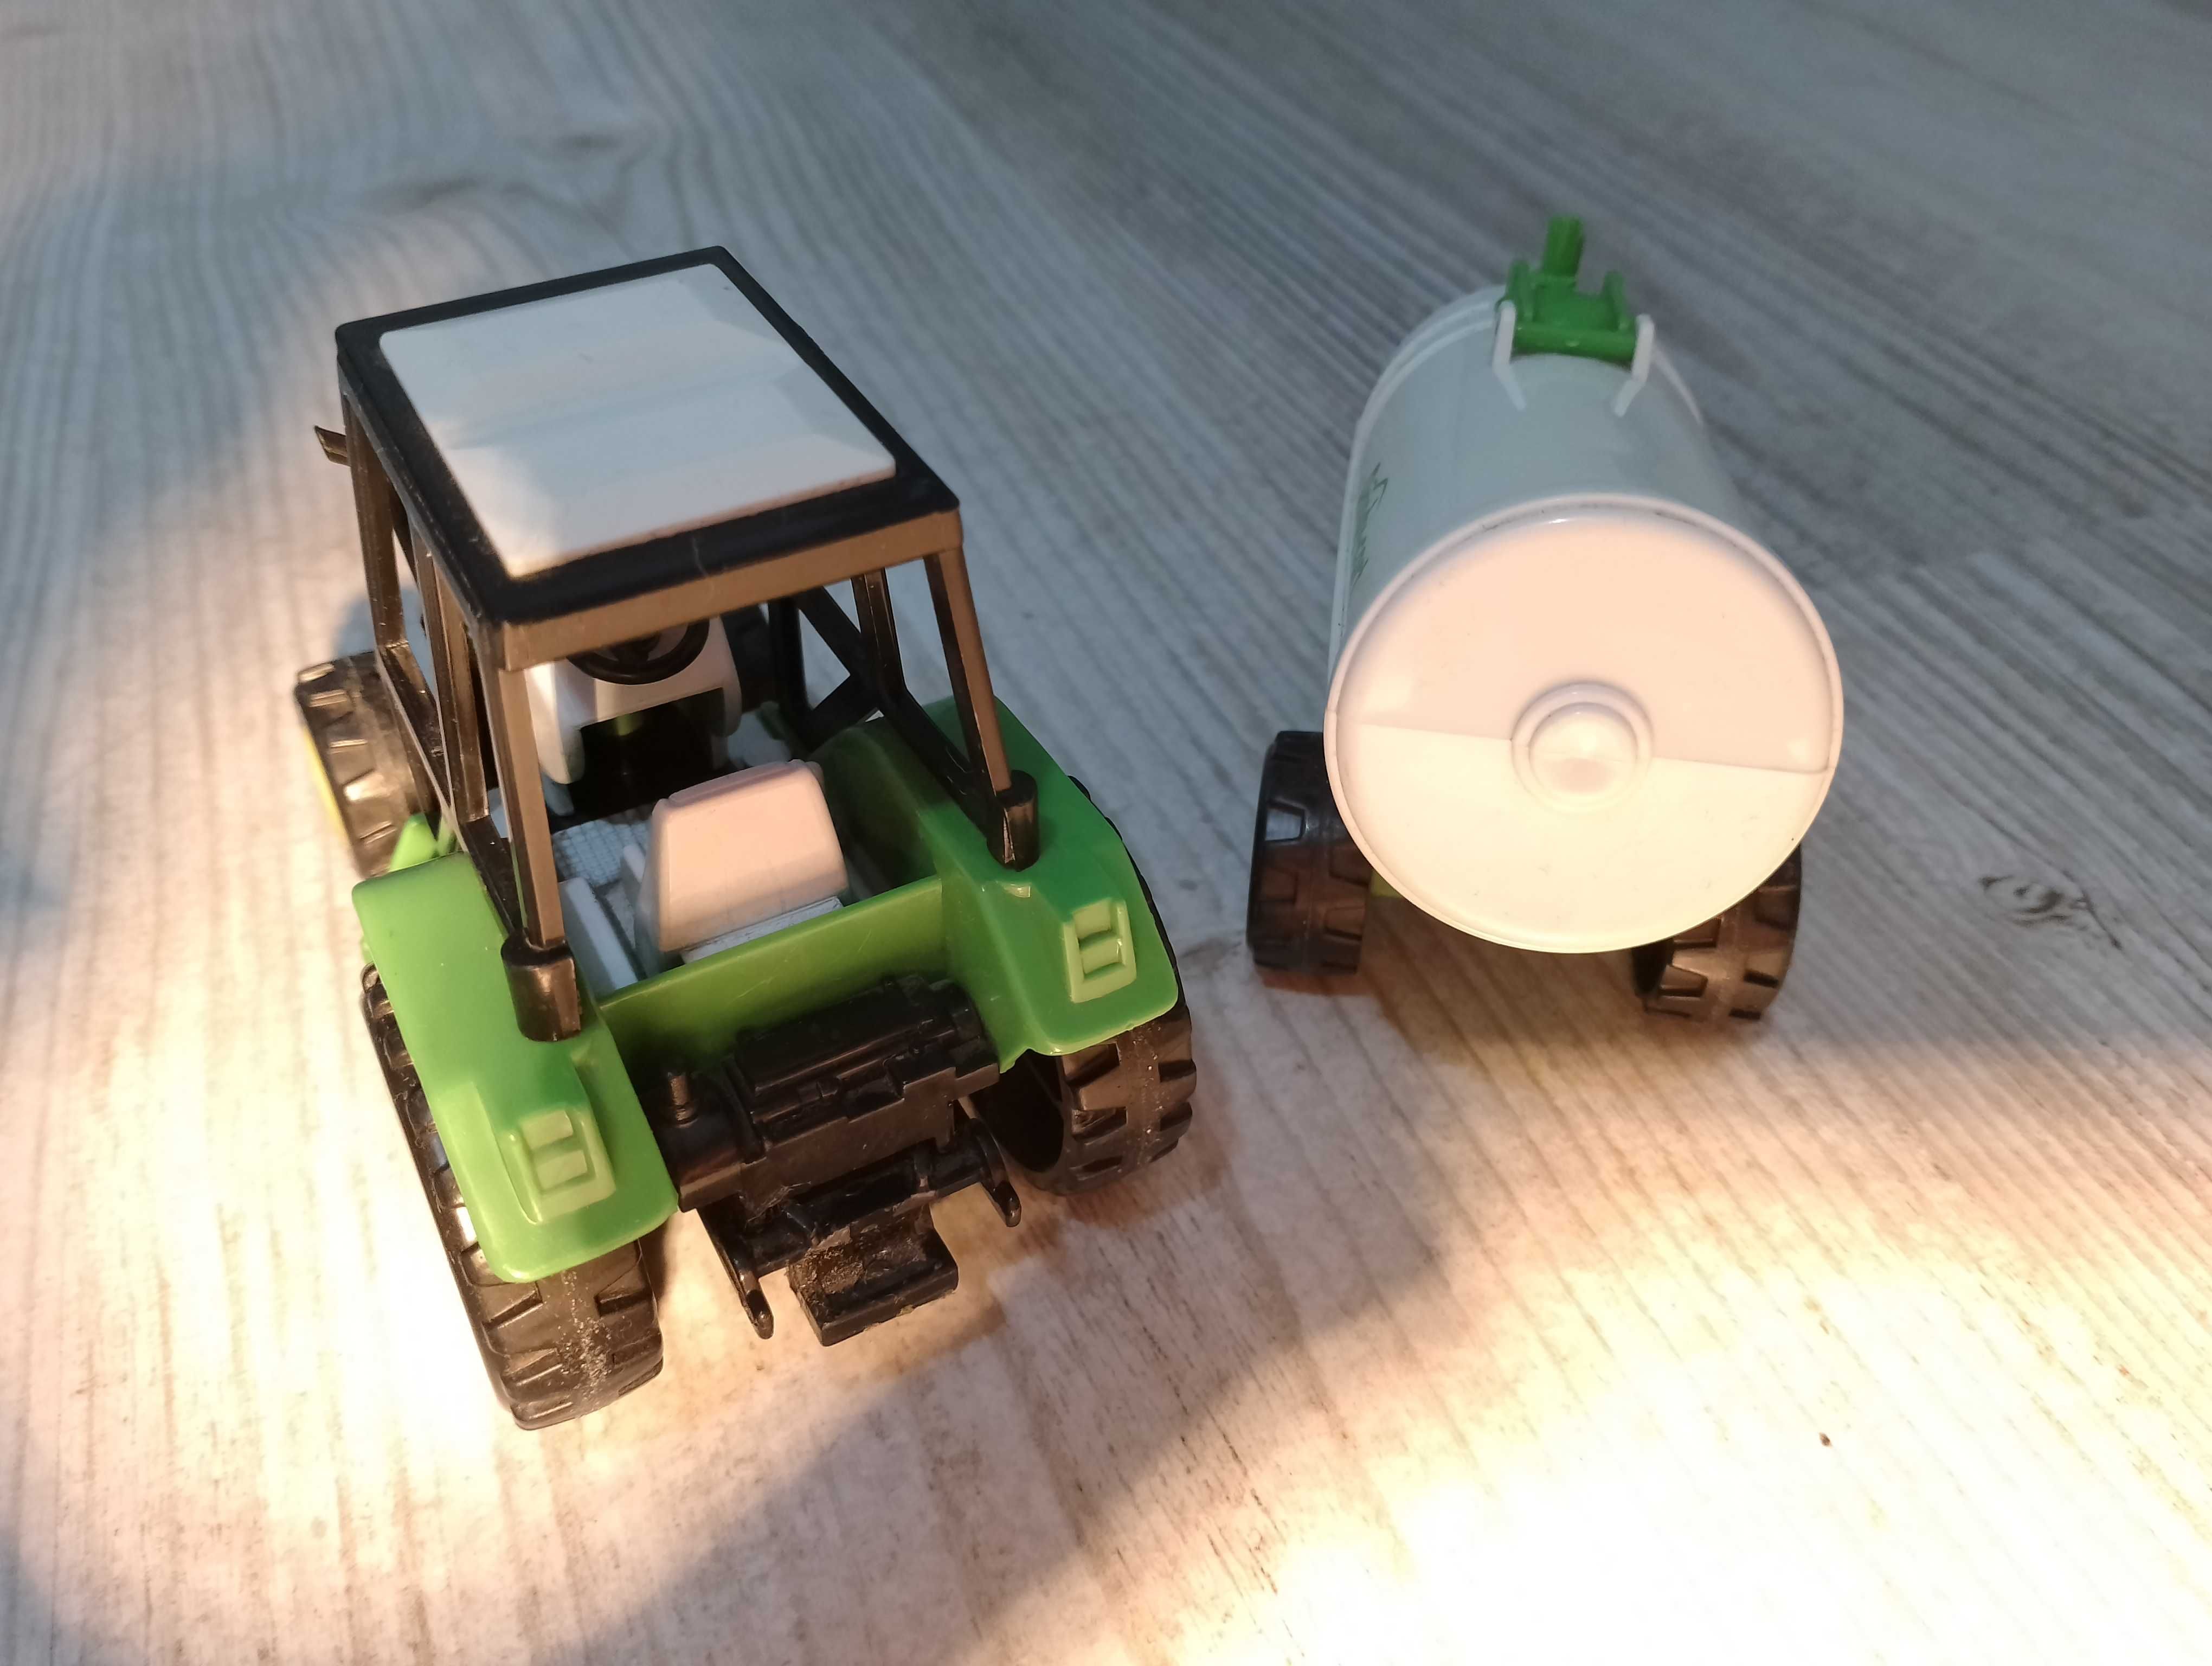 Zabawka traktor z przyczepą